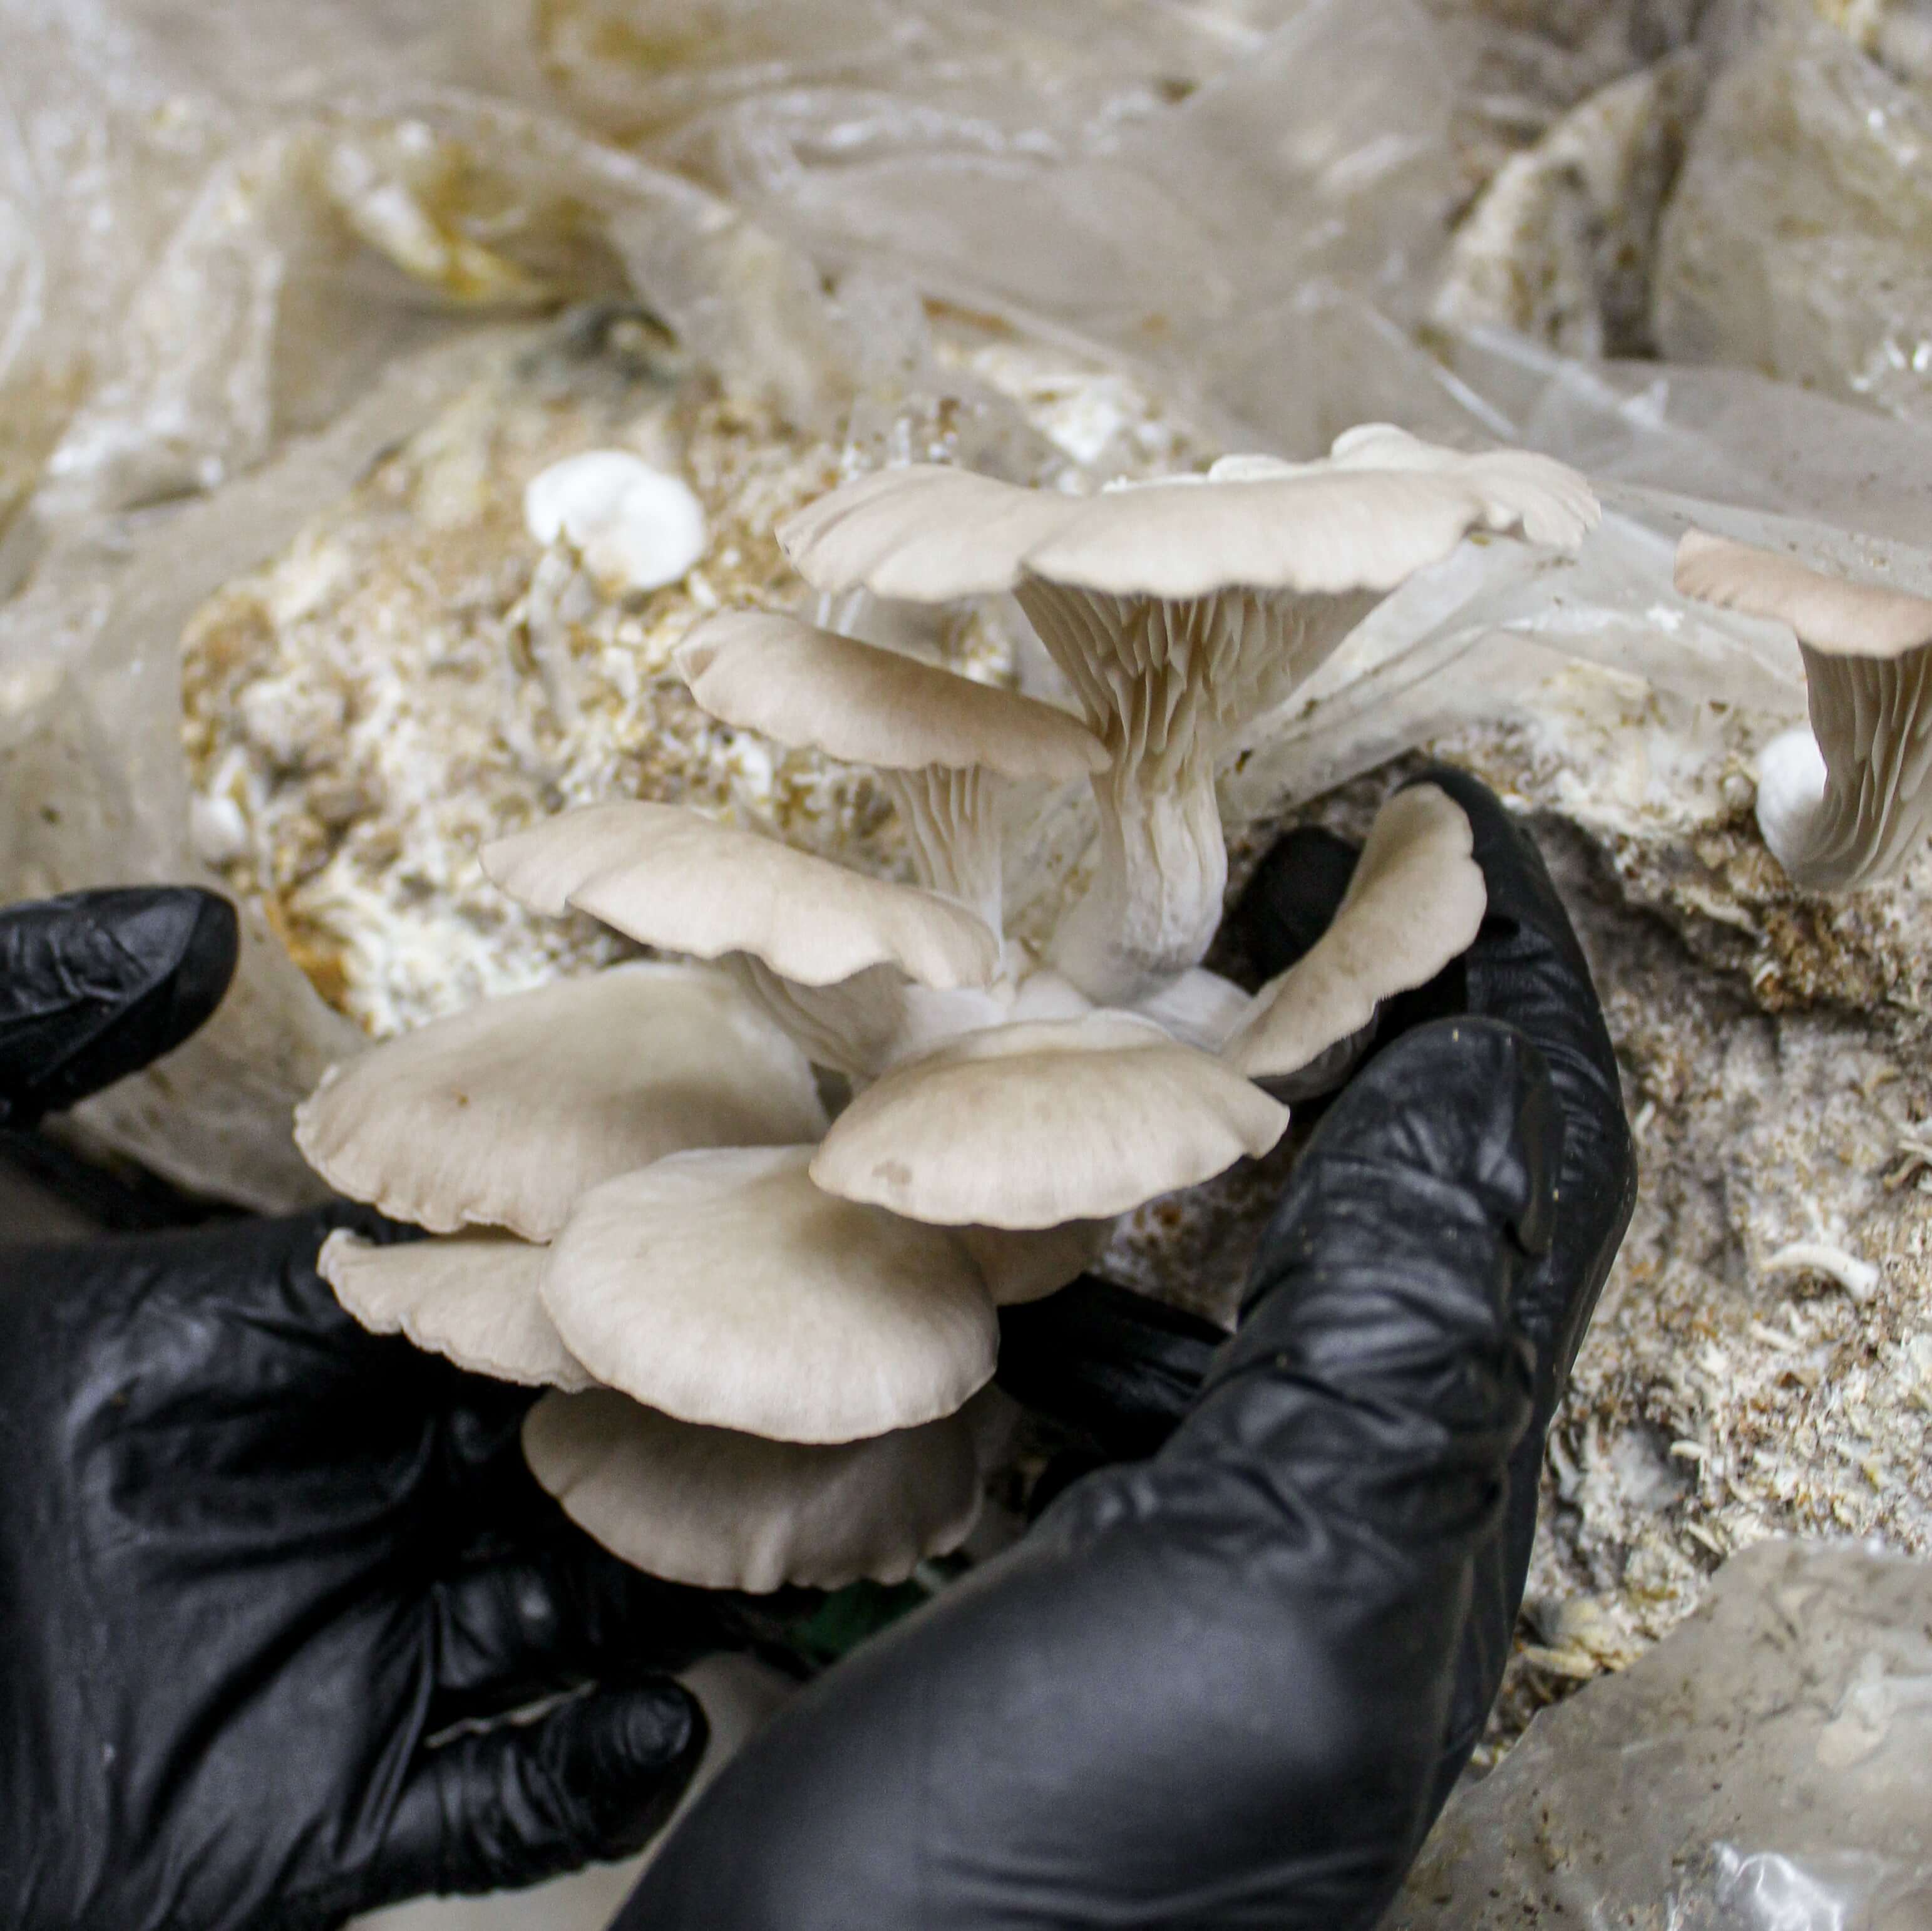 Marie-Anne Oyster Mushroom Growing Kit